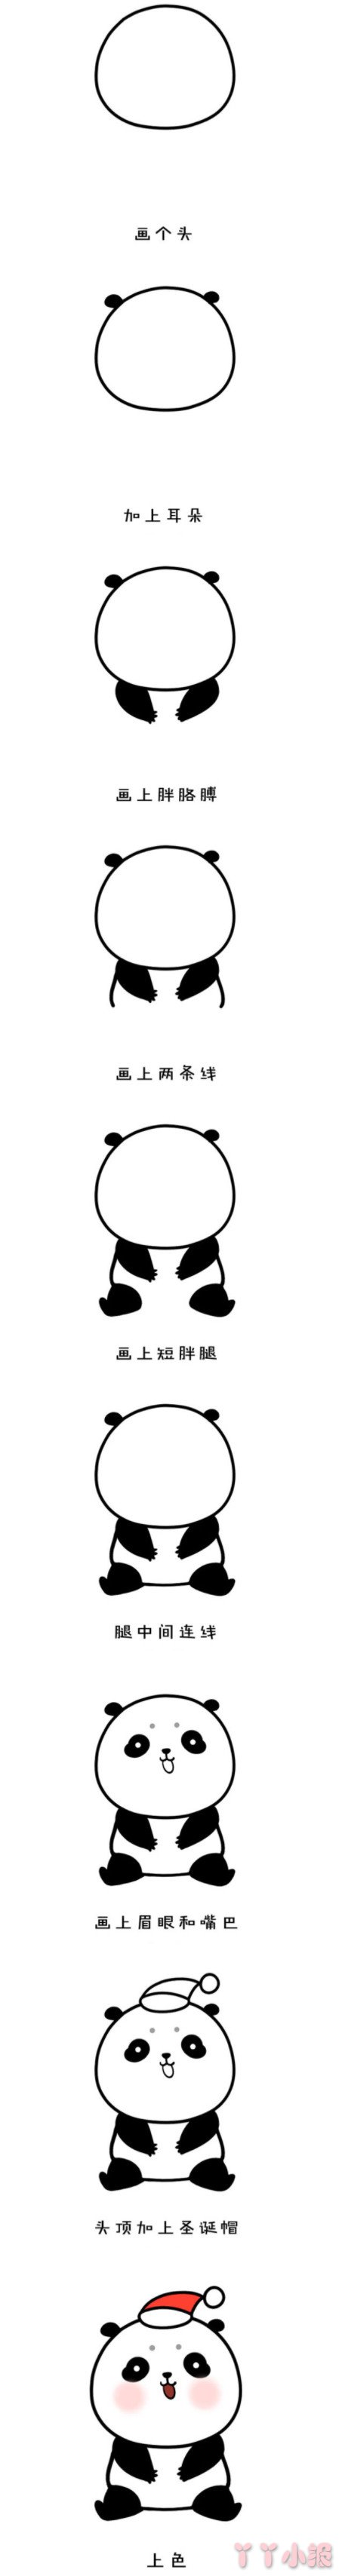 可爱小熊猫怎么画涂色 熊猫简笔画图片